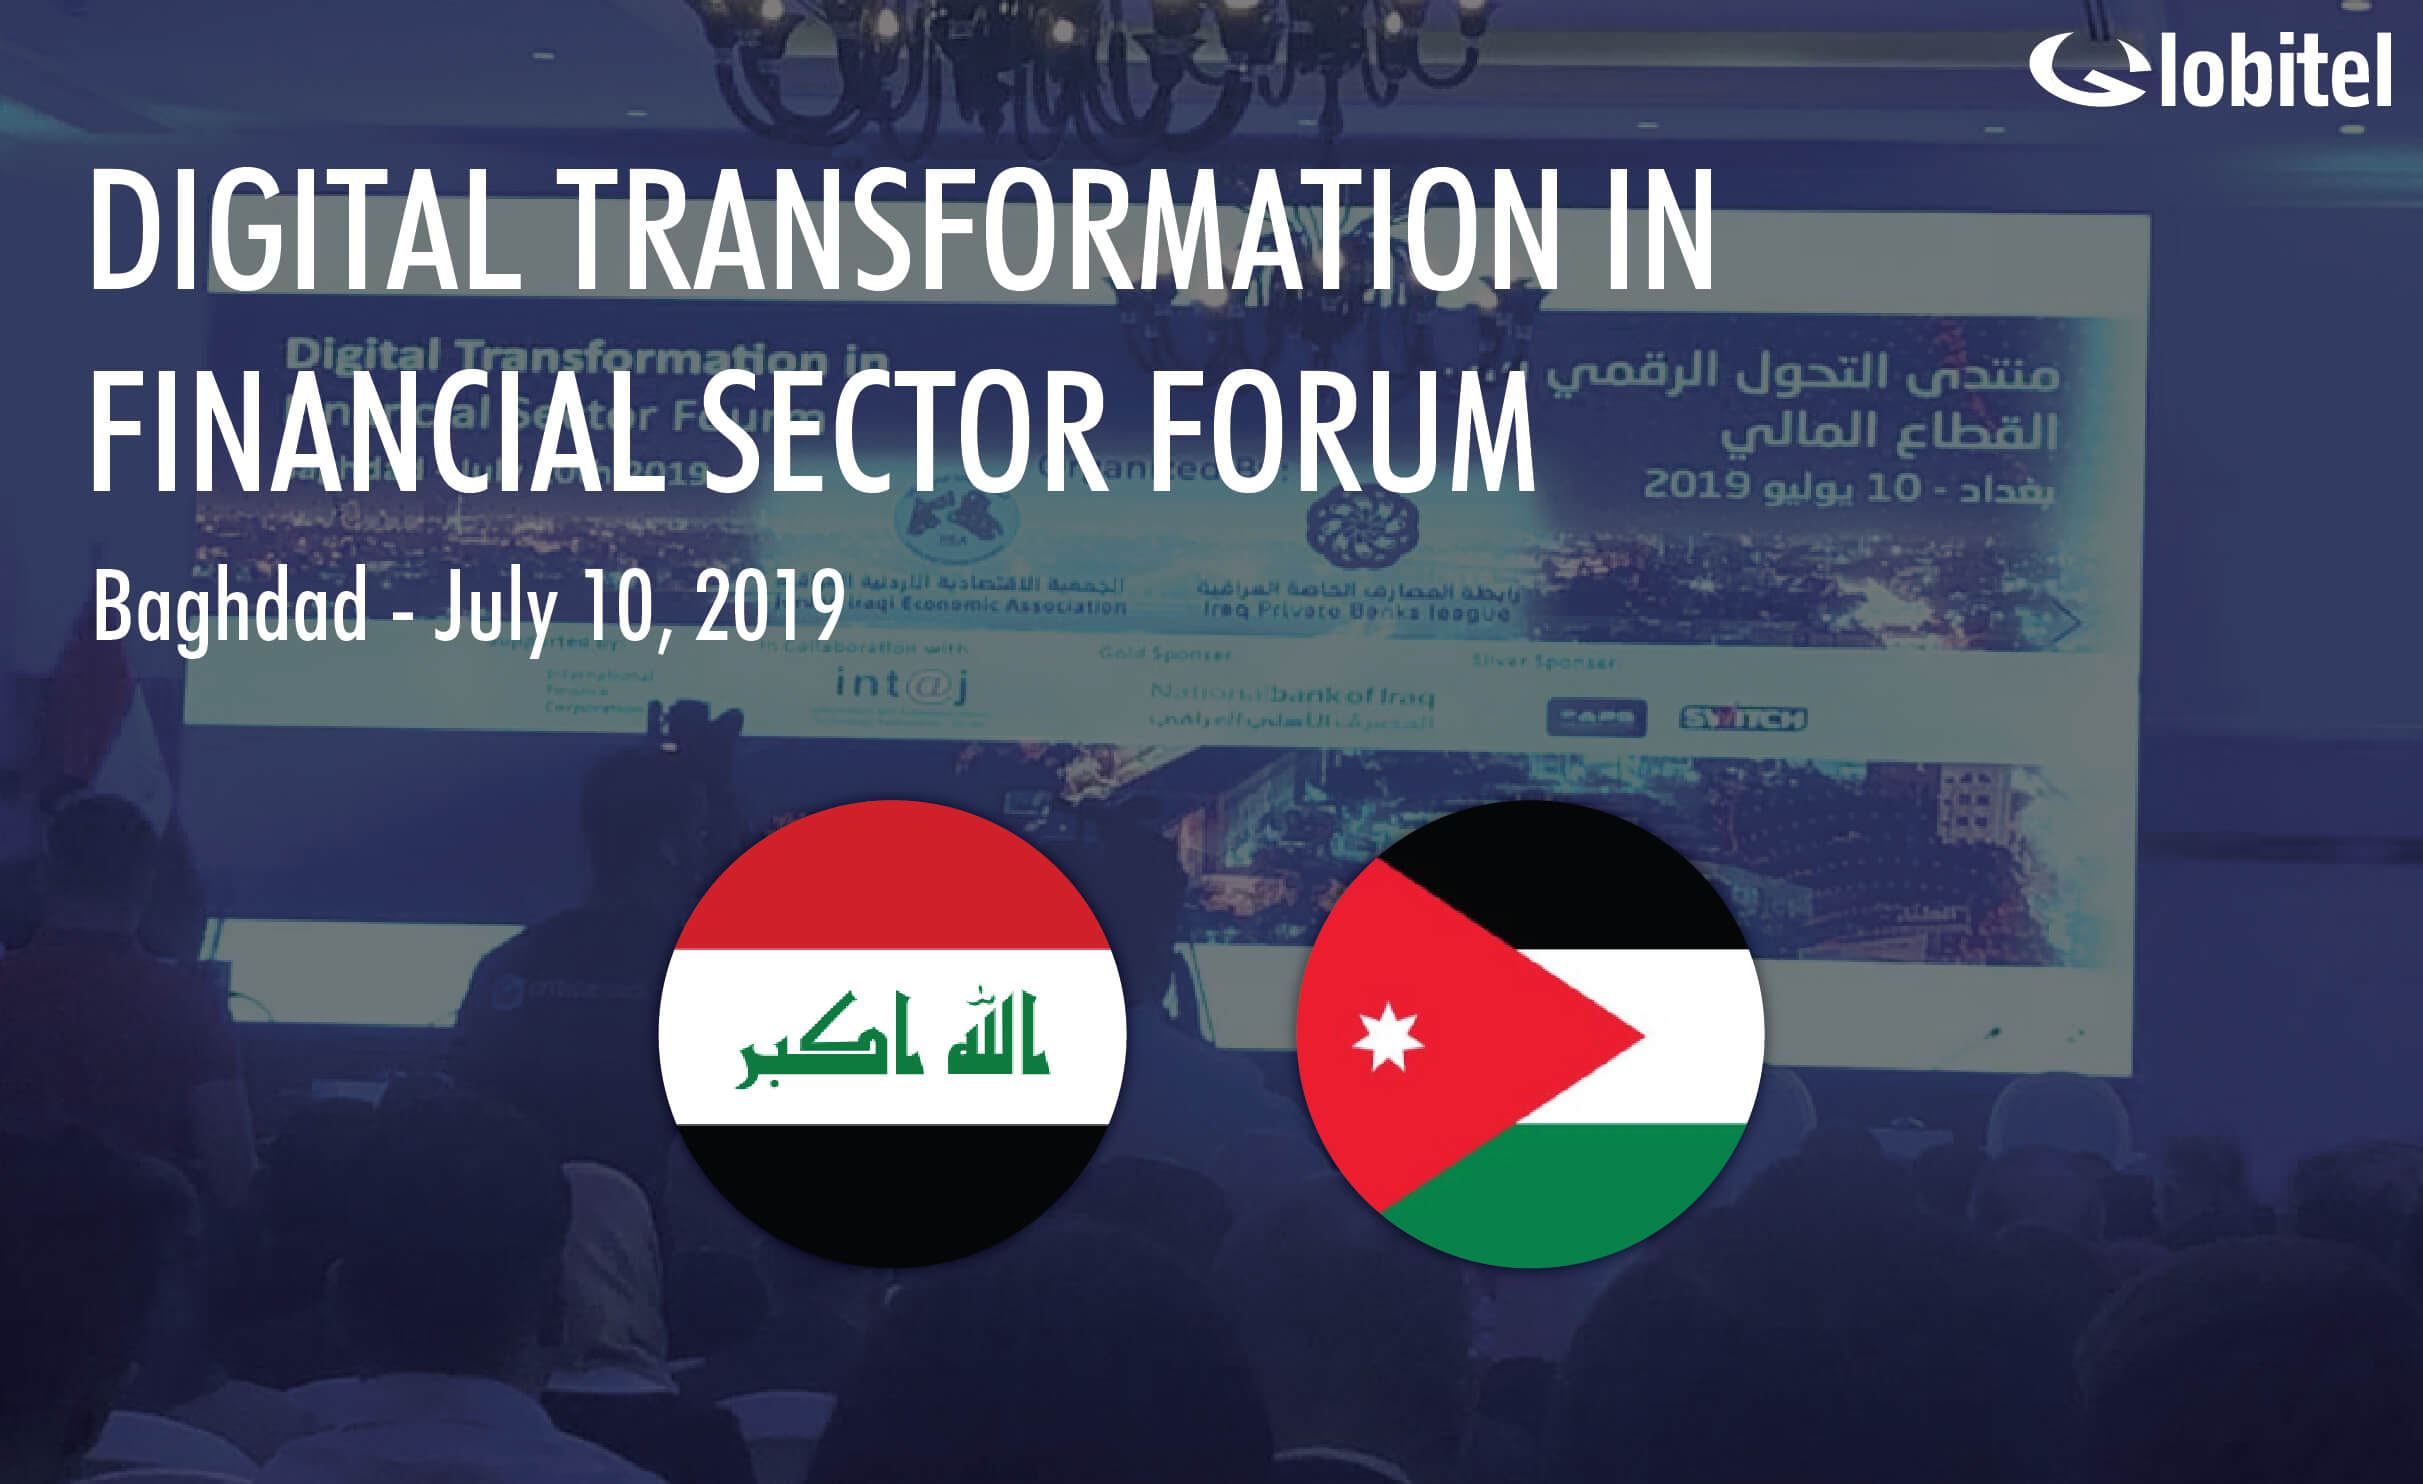 digital transformation forum iraq globitel jordan